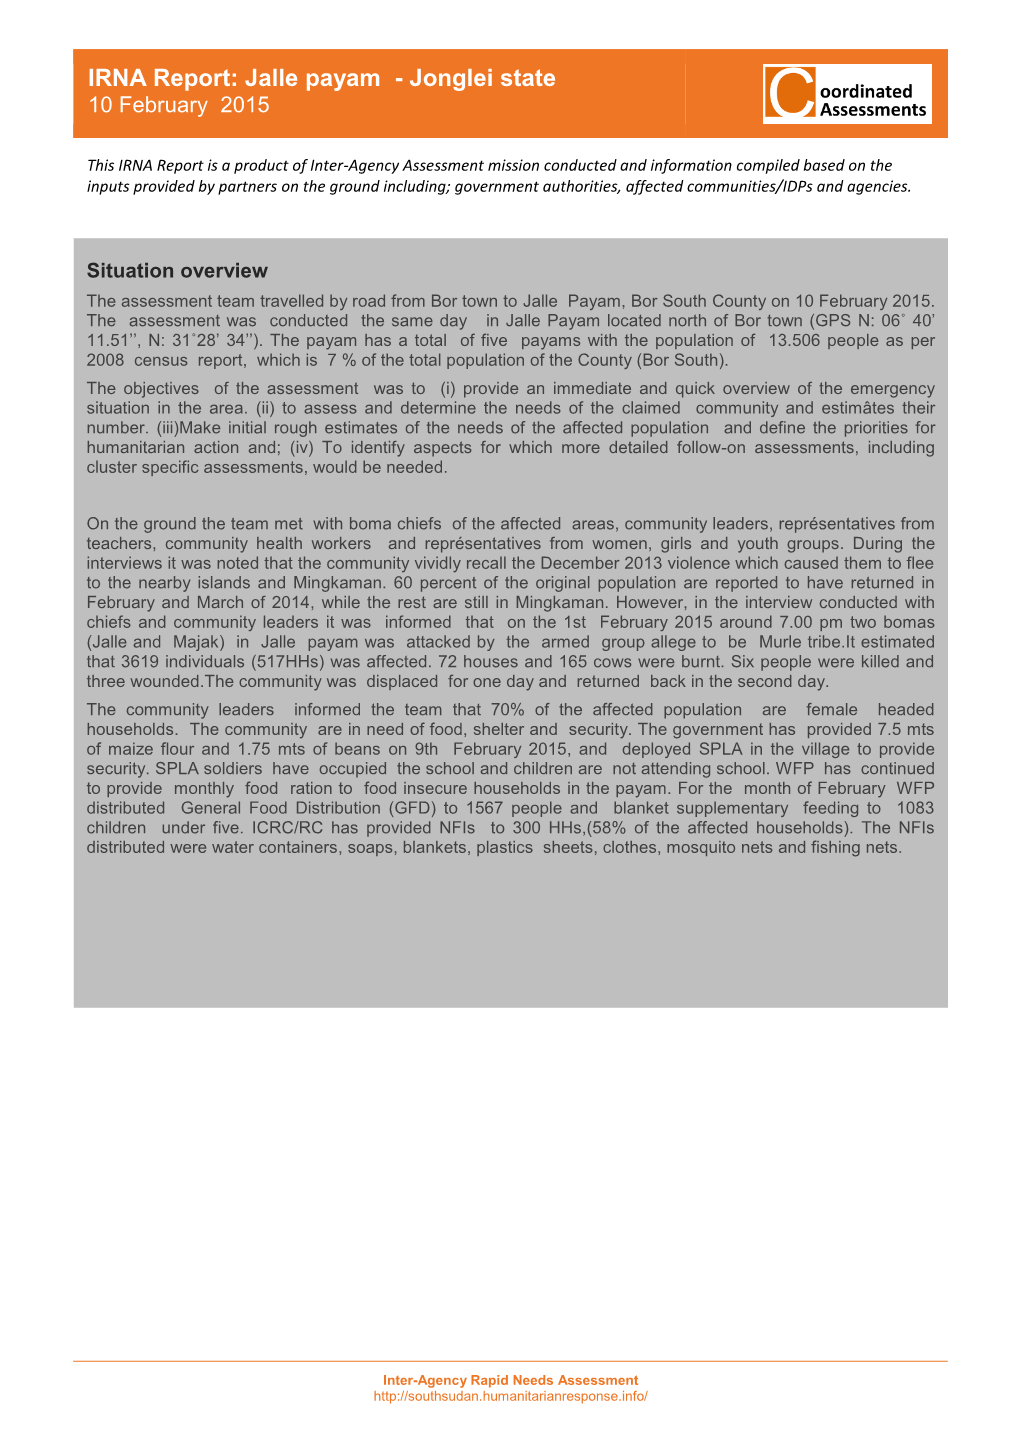 IRNA Report: Jalle Payam - Jonglei State 10 February 2015